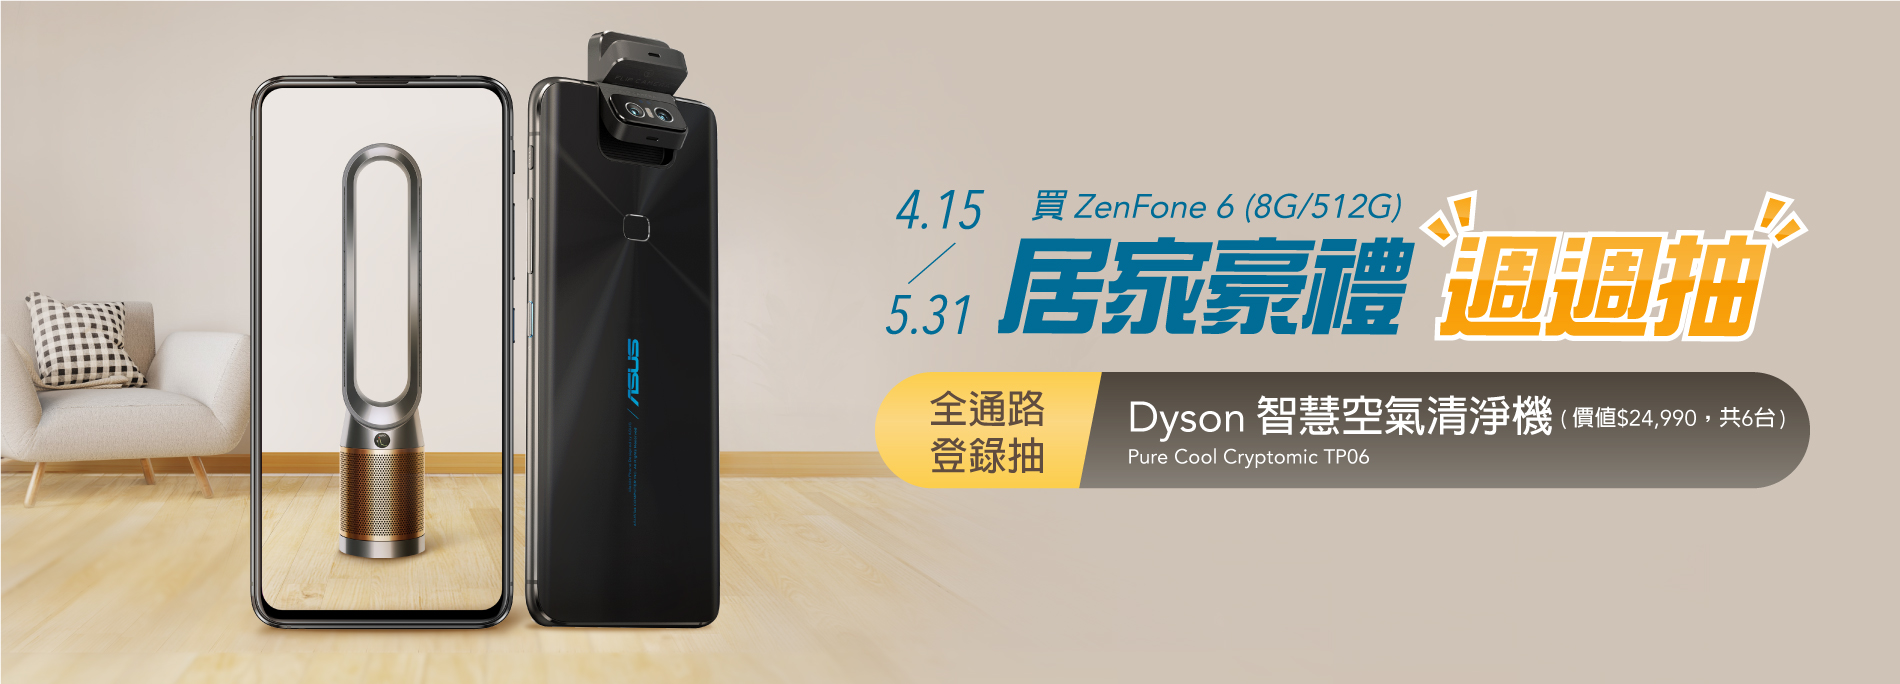 【ZenFone 6豪禮週週抽】購買指定機種登錄抽Dyson空氣清淨機